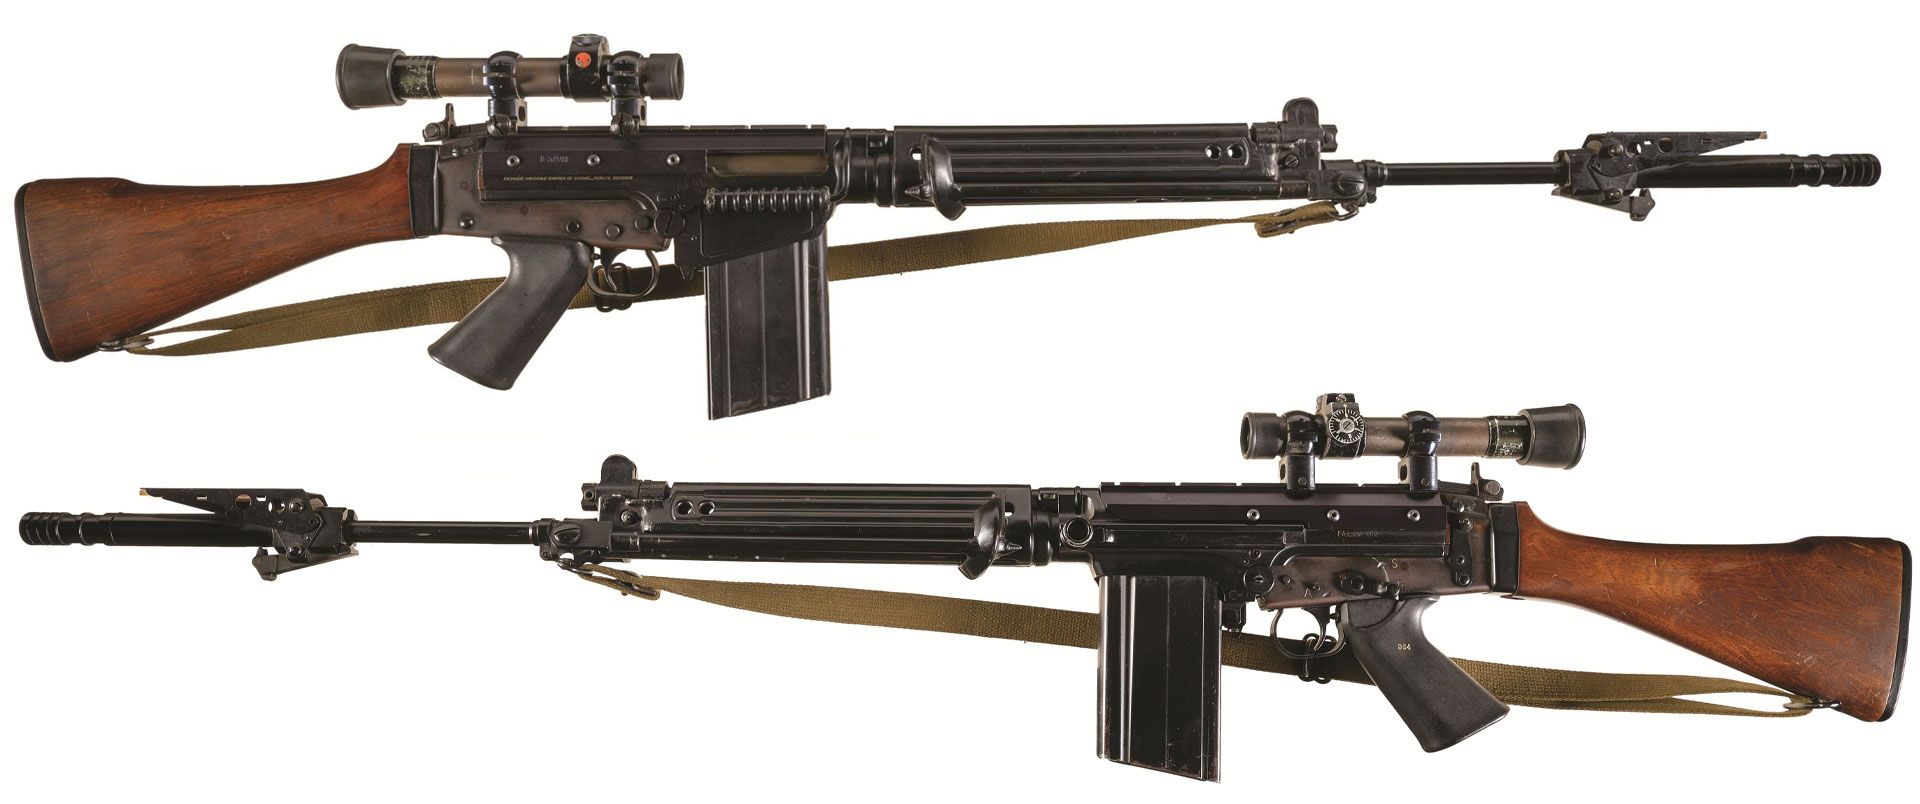 FN-G-Series